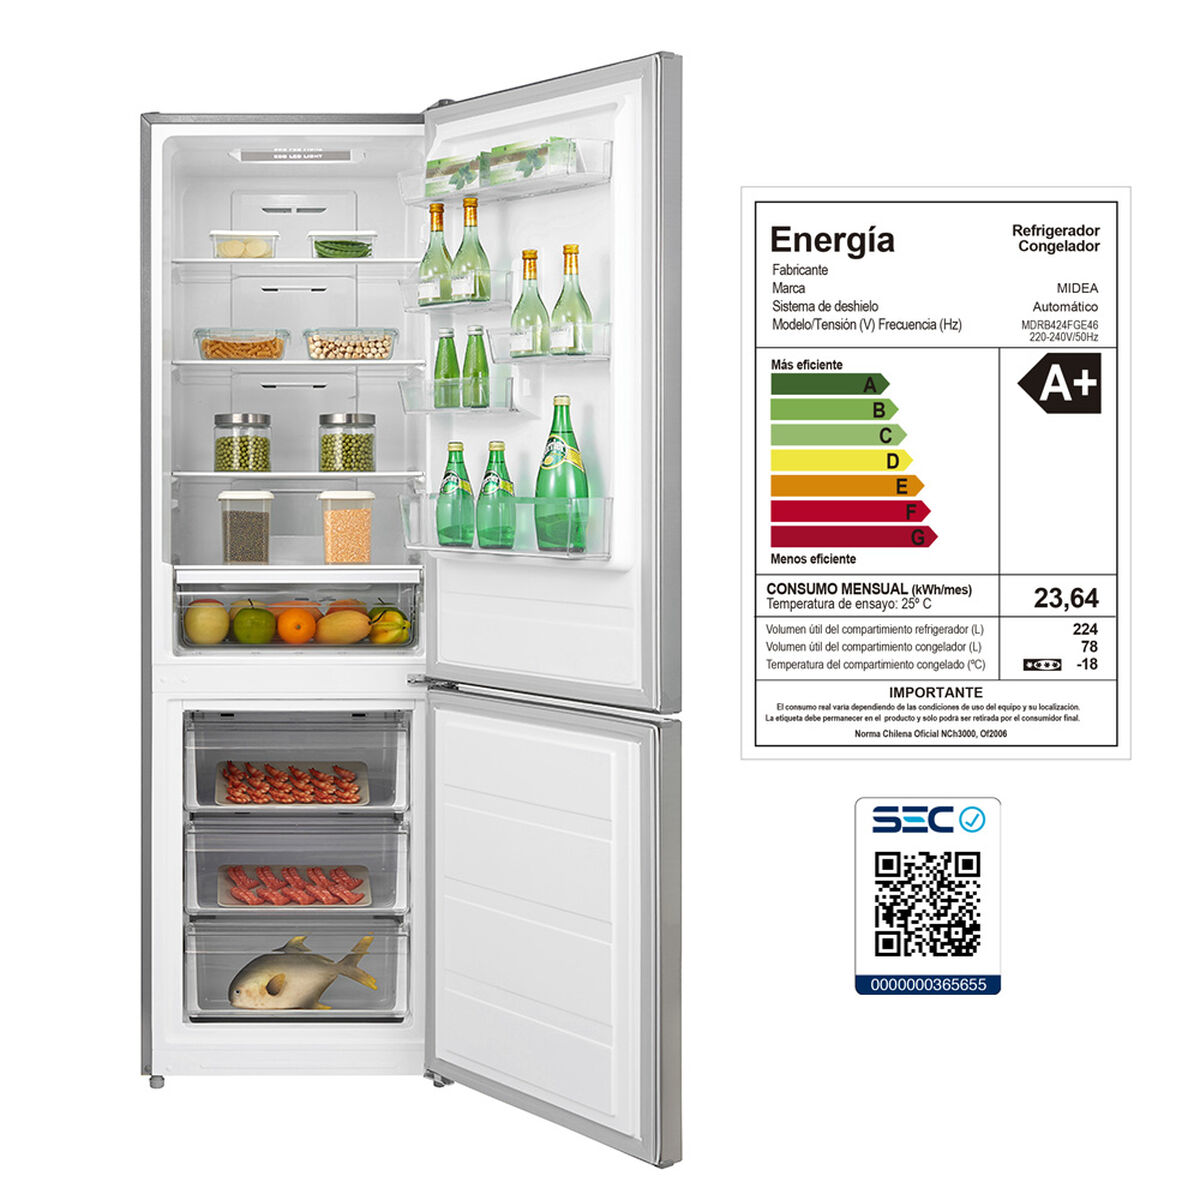 Refrigerador No Frost Midea MDRB424FGE46 302 lts